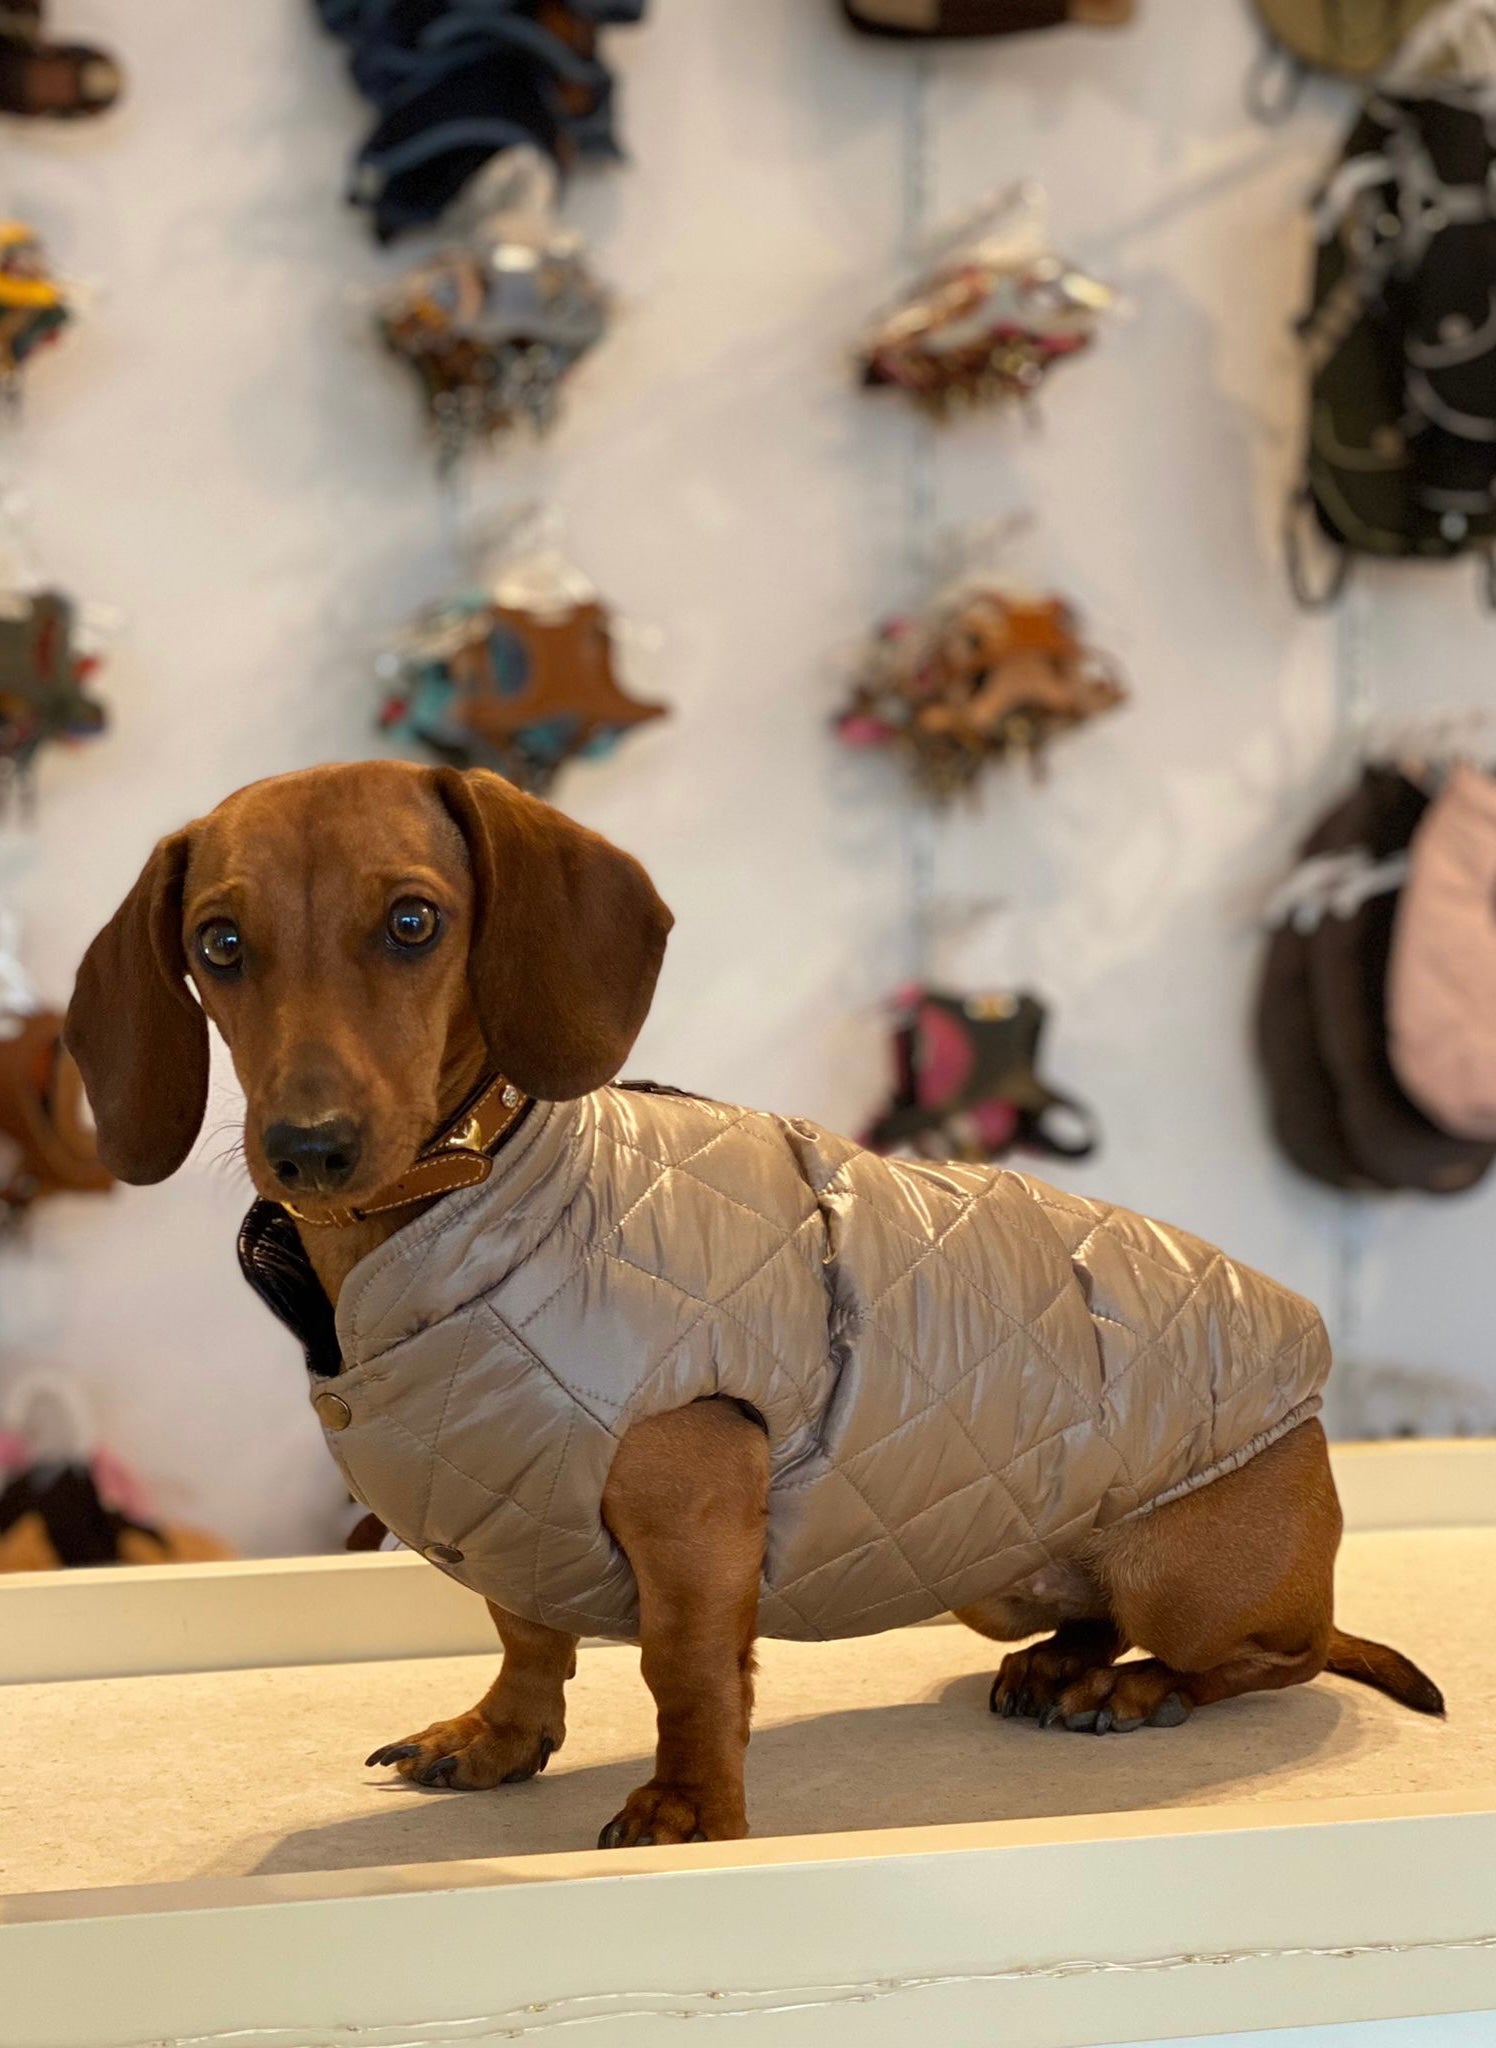 Tel Aviv dog coat especially for dachshunds 2 in 1 (reversible)